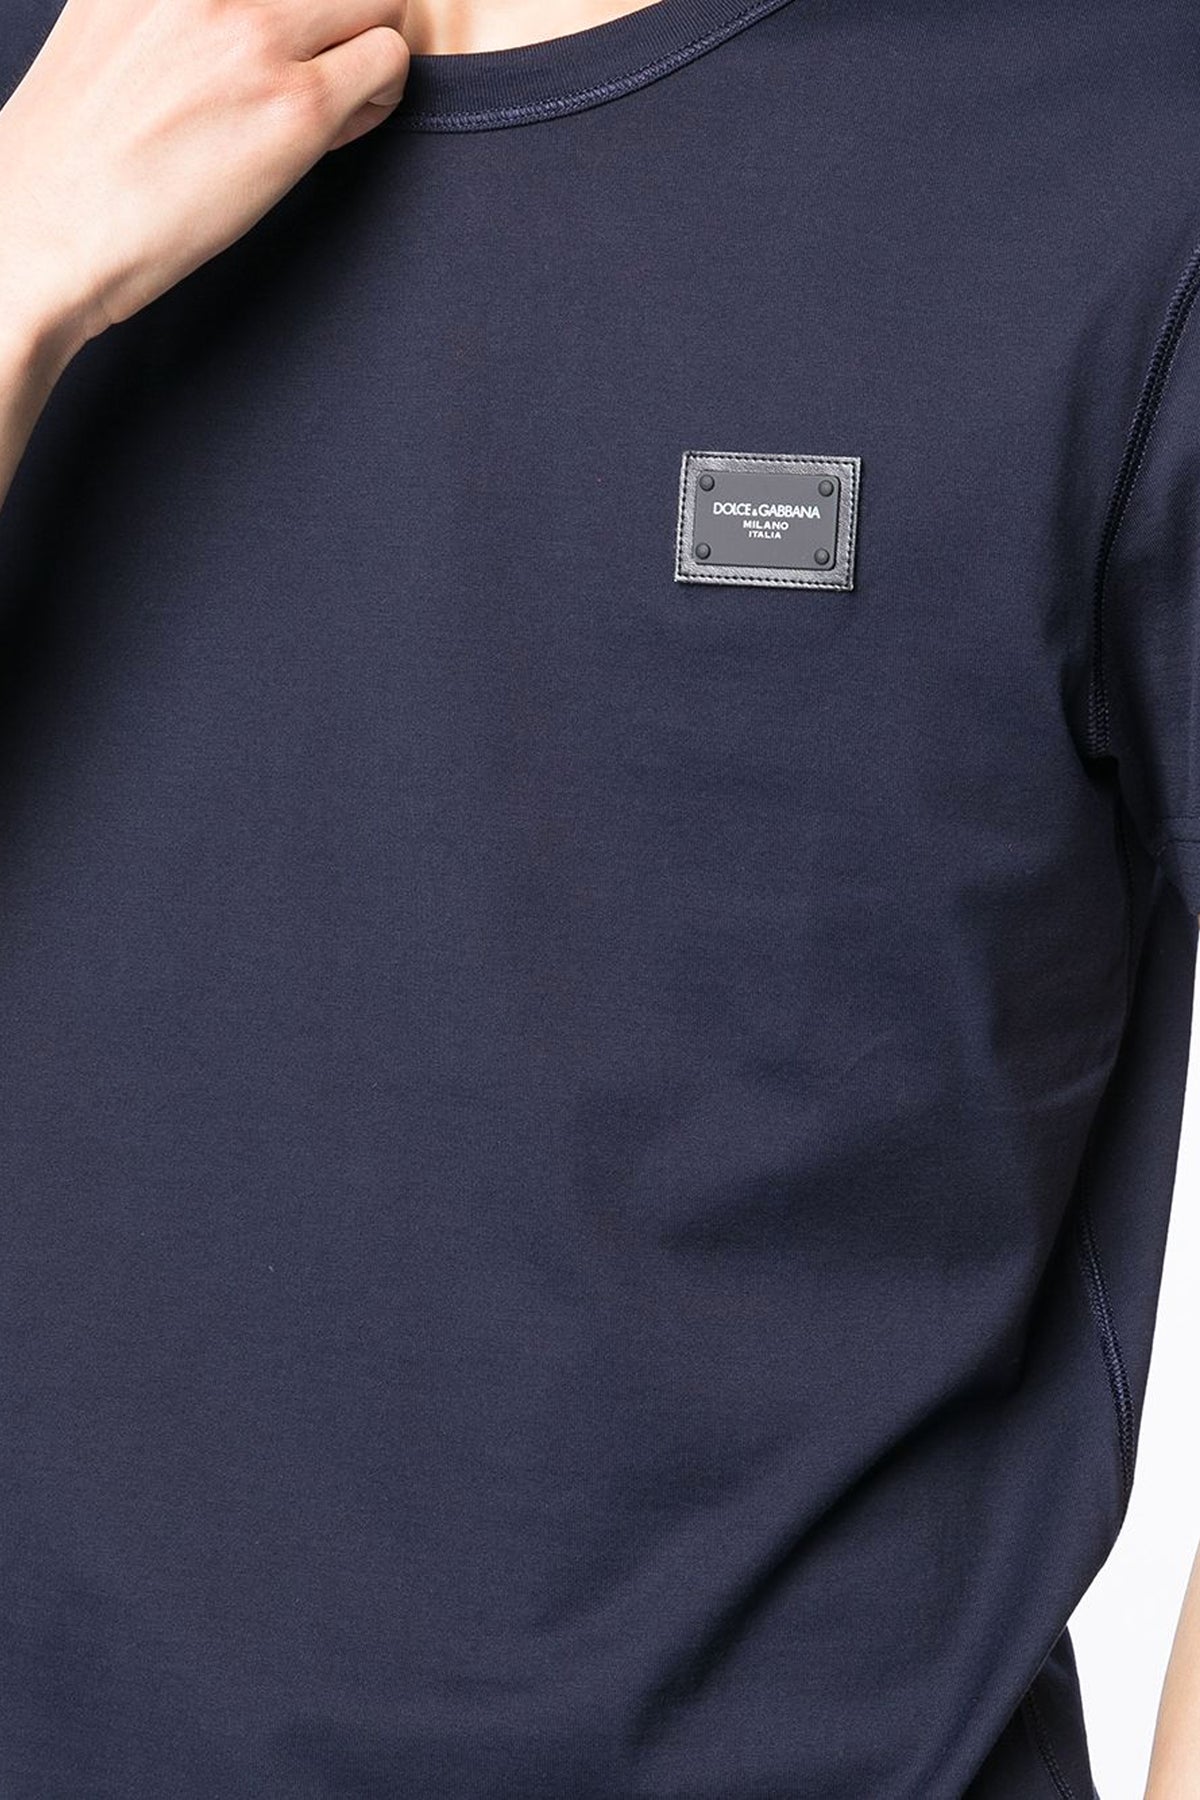 Dolce & Gabbana crew-neck t-shirt plate